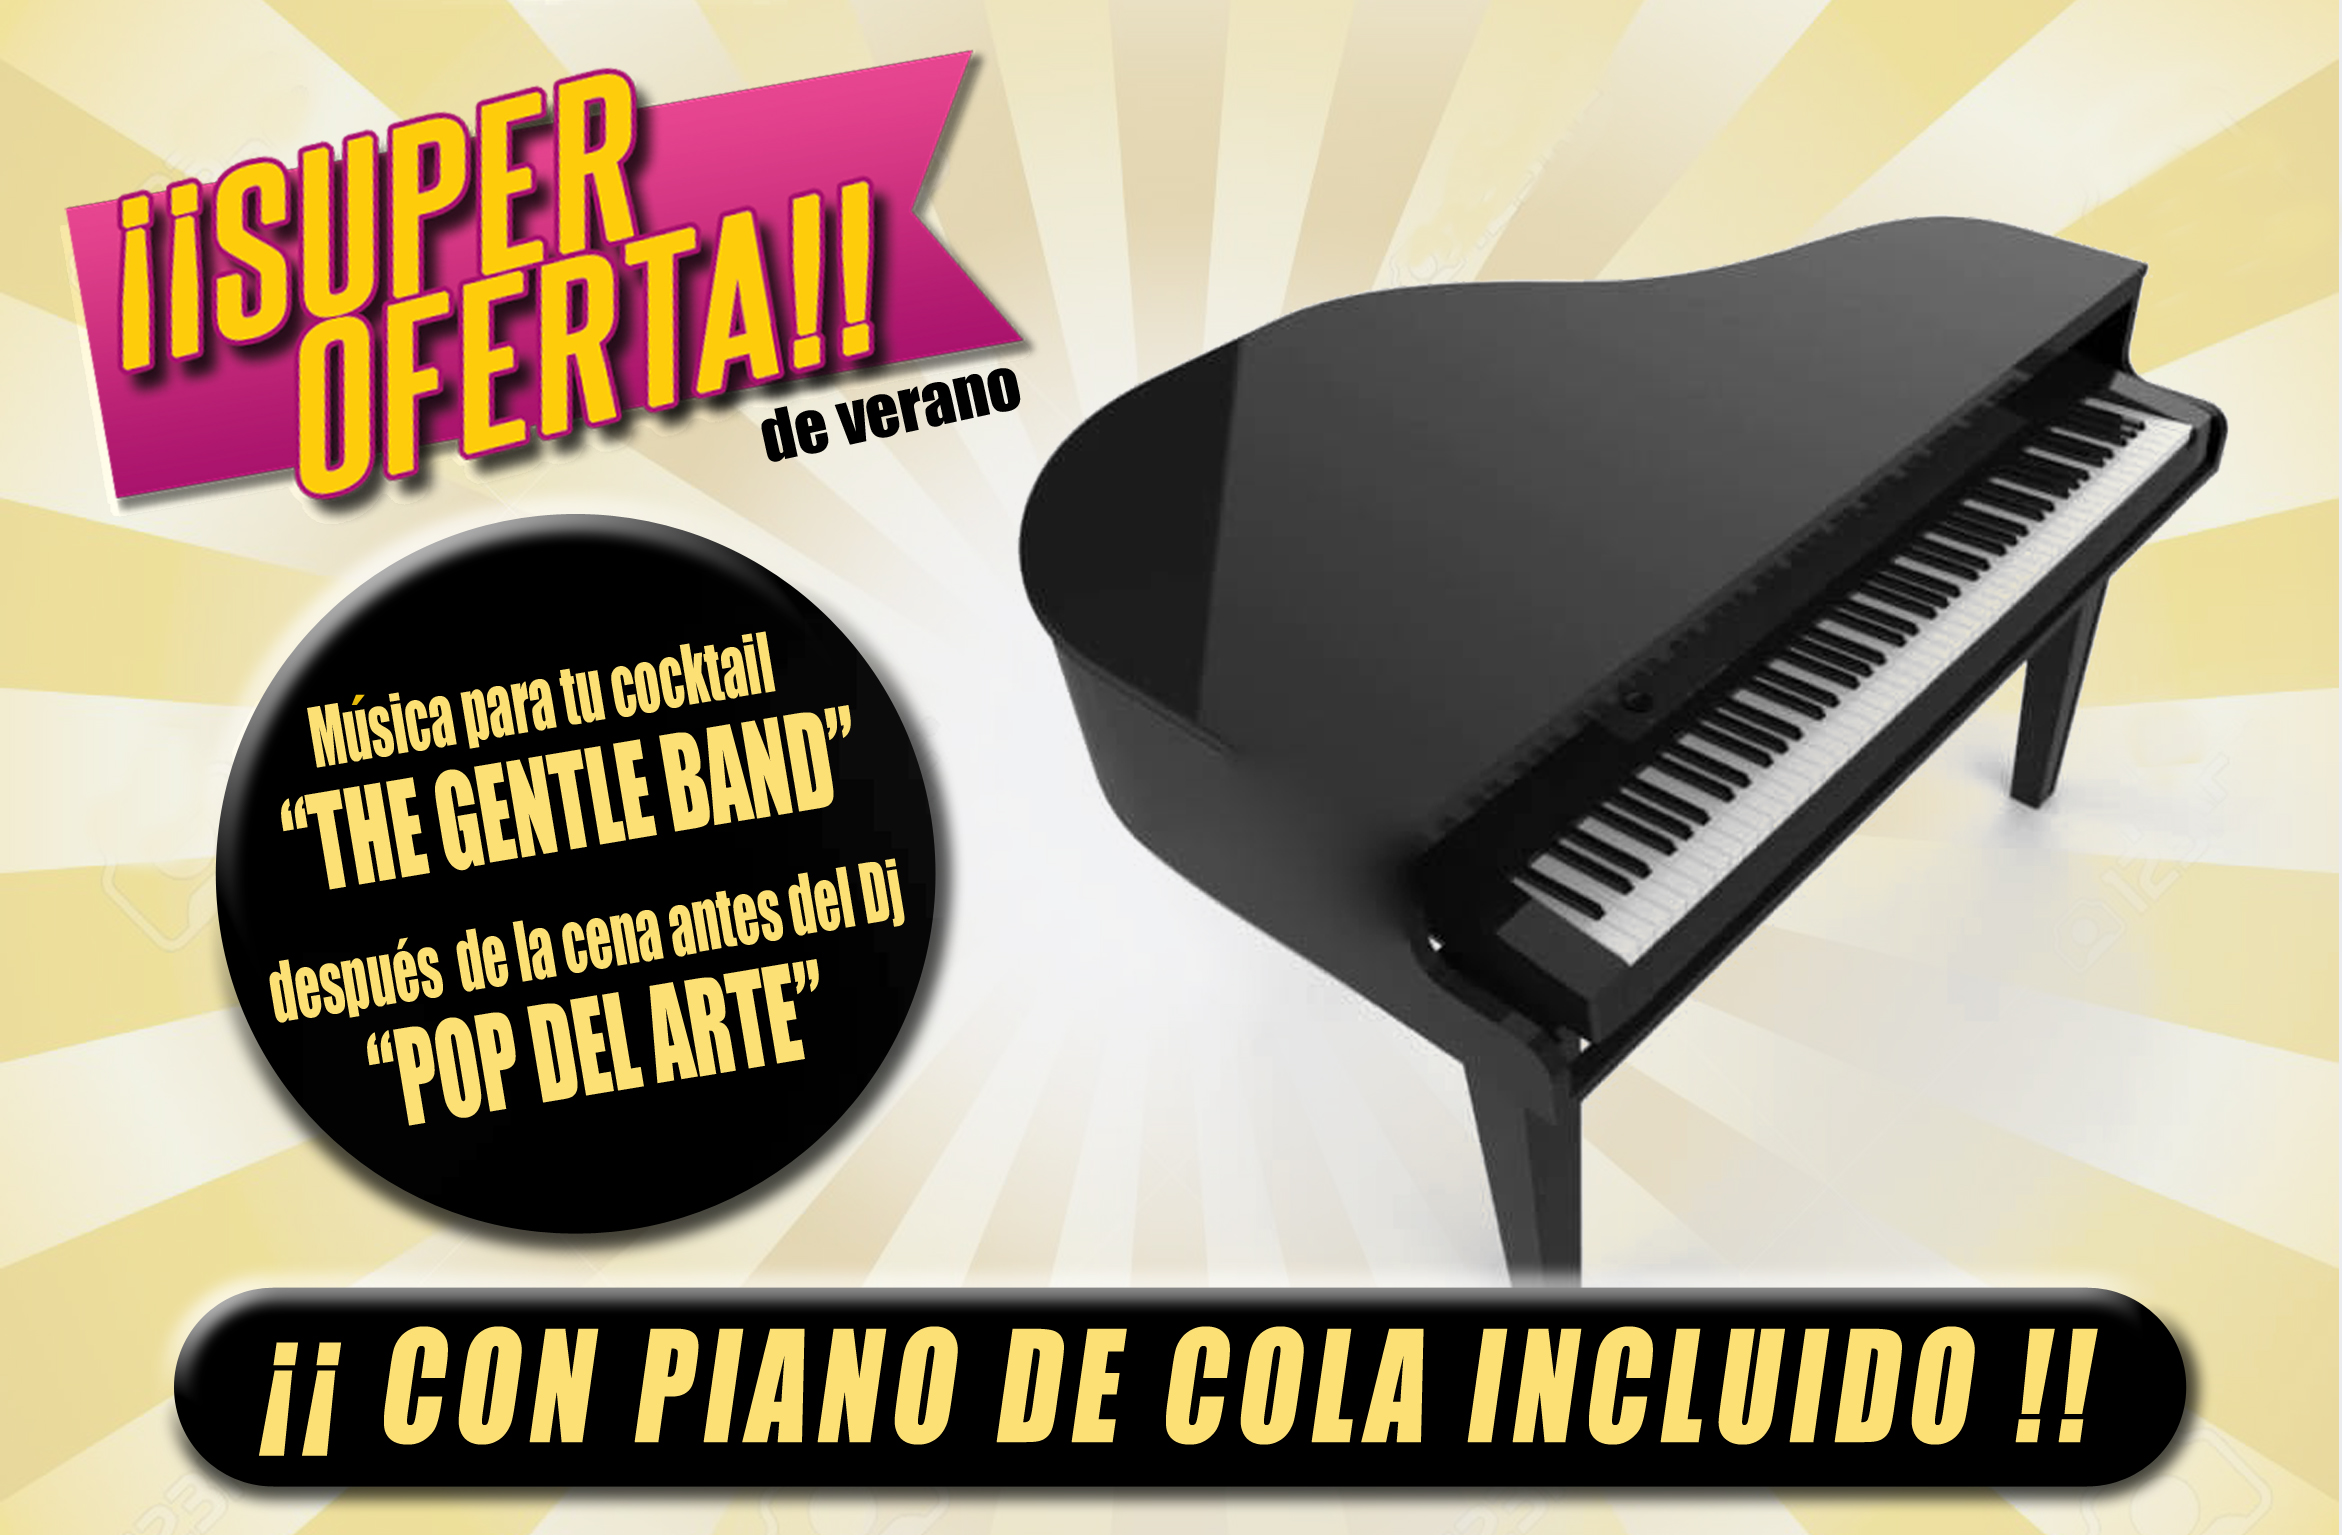 Super Oferta de Verano ¡¡ Con Piano de cola Incluido !!